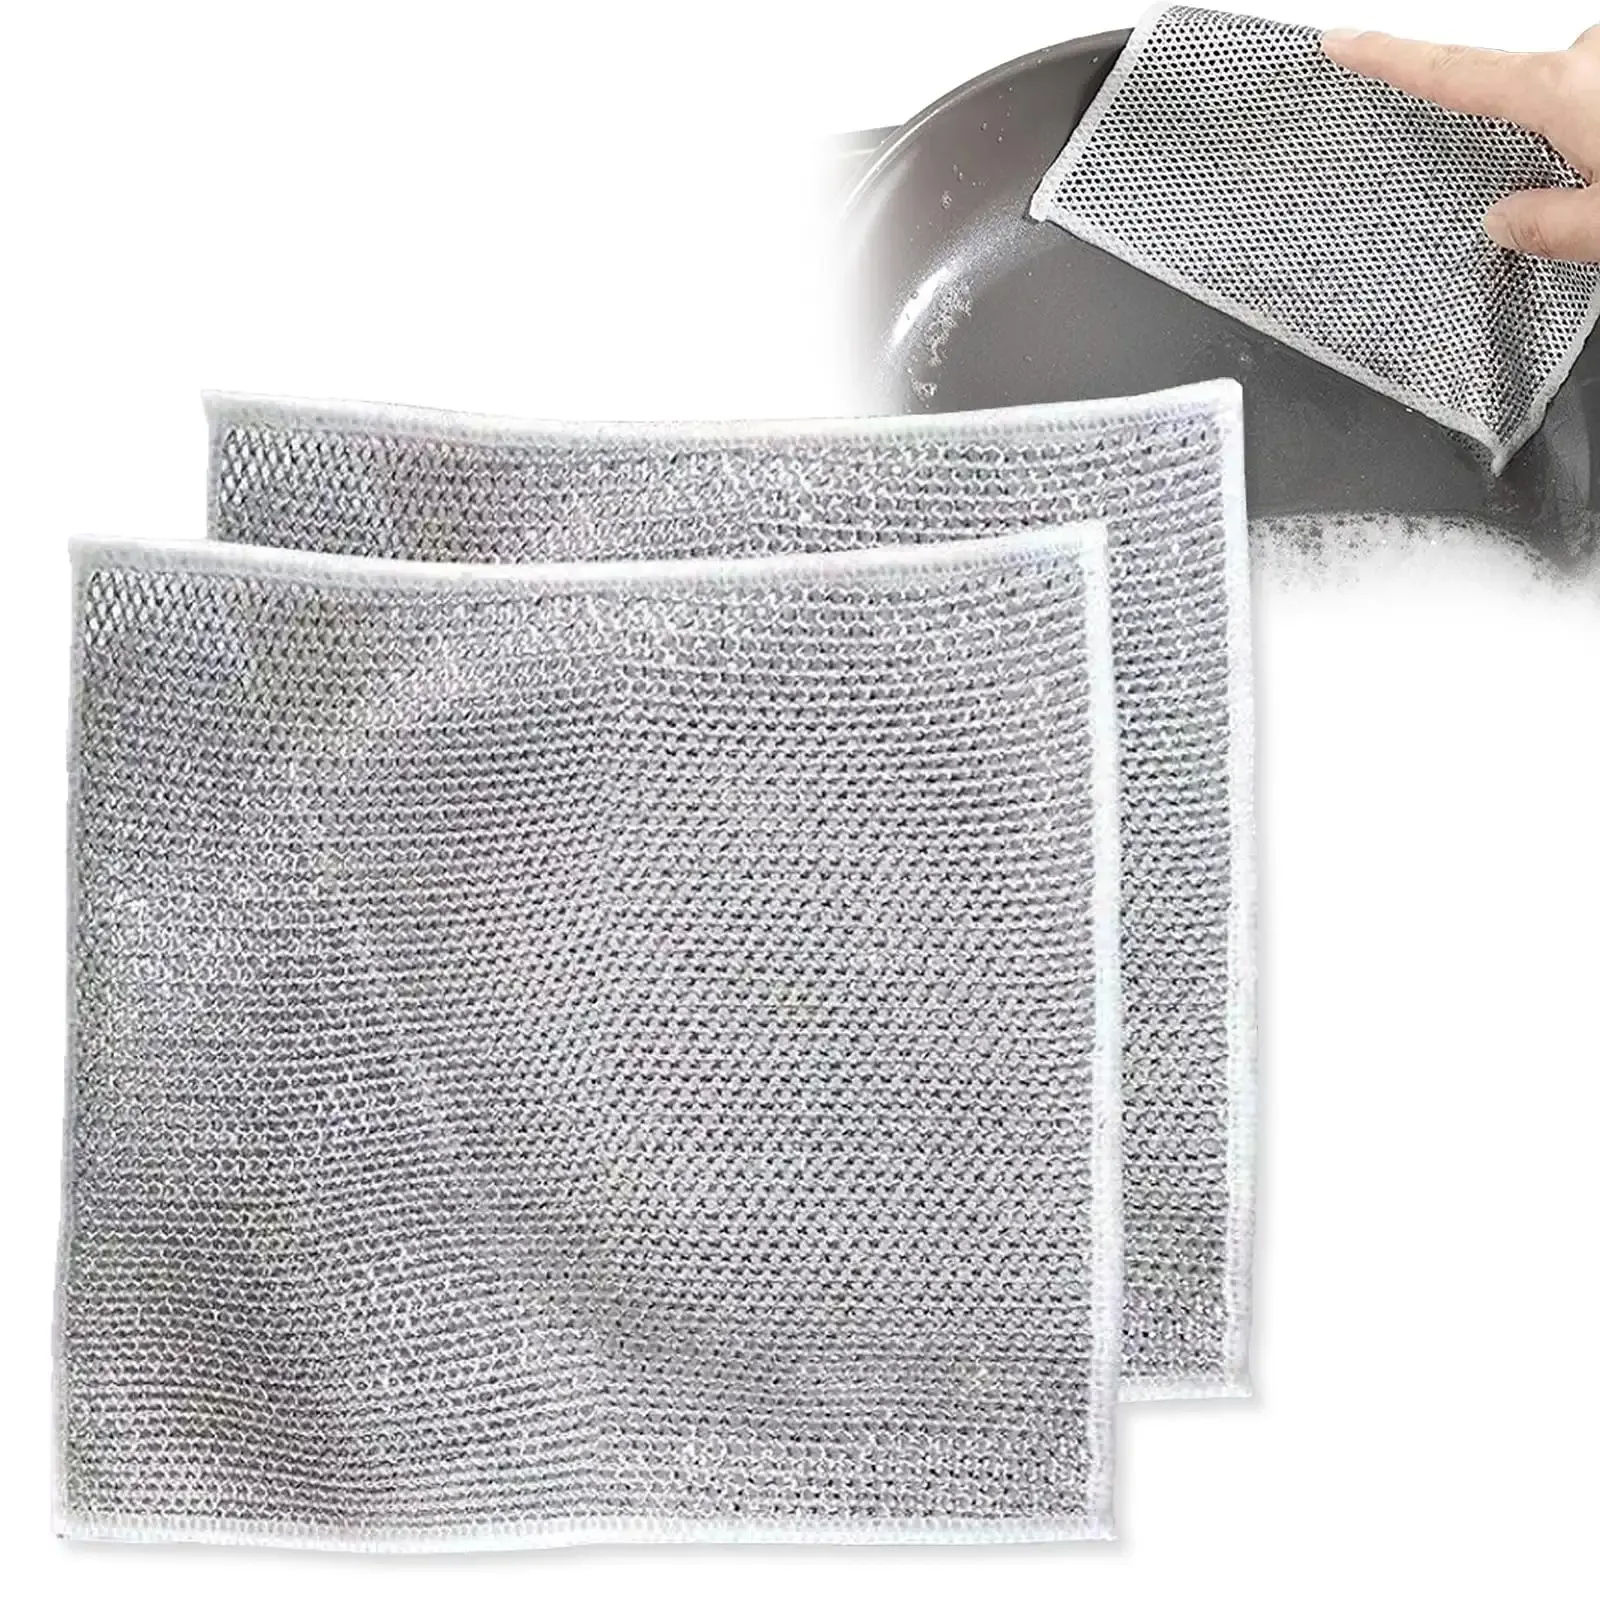 ผ้าเช็ดจานลวดสีเงินสองด้านสำหรับใช้ในครัวผ้าขัดมหัศจรรย์อุปกรณ์ในครัวเรือนผ้าทำความสะอาดลวดเงิน